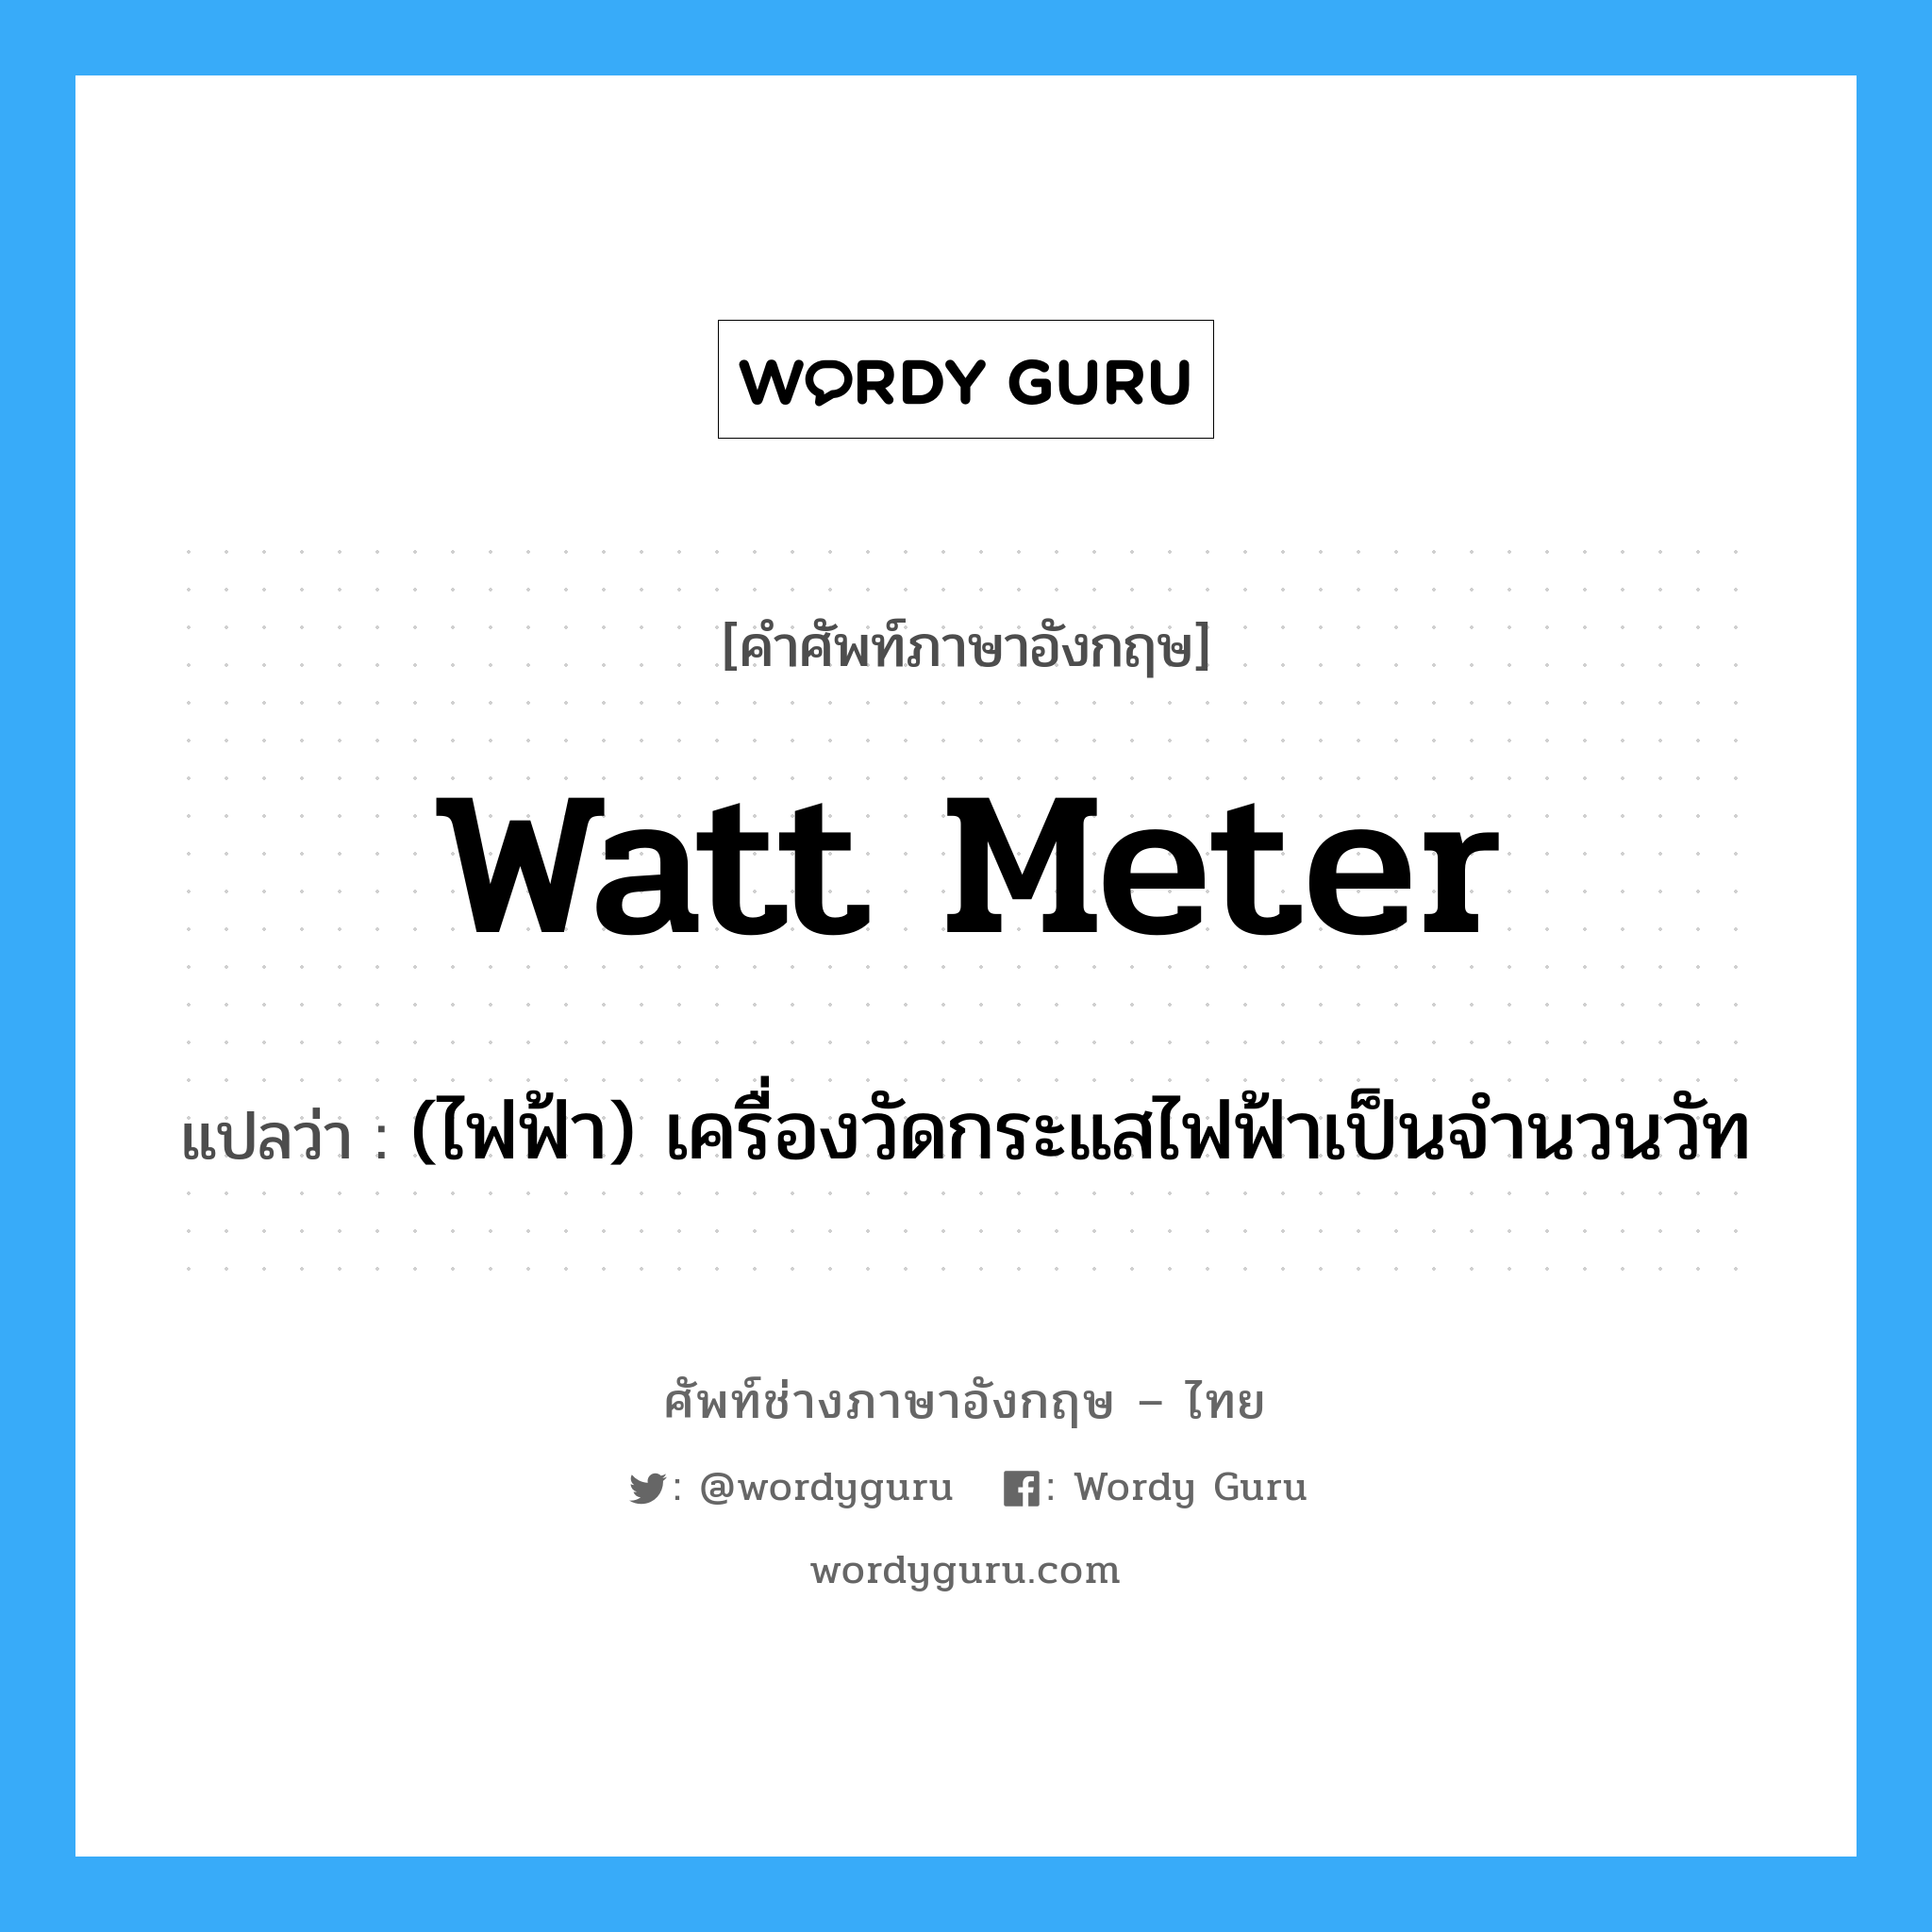 watt meter แปลว่า?, คำศัพท์ช่างภาษาอังกฤษ - ไทย watt meter คำศัพท์ภาษาอังกฤษ watt meter แปลว่า (ไฟฟ้า) เครื่องวัดกระแสไฟฟ้าเป็นจำนวนวัท